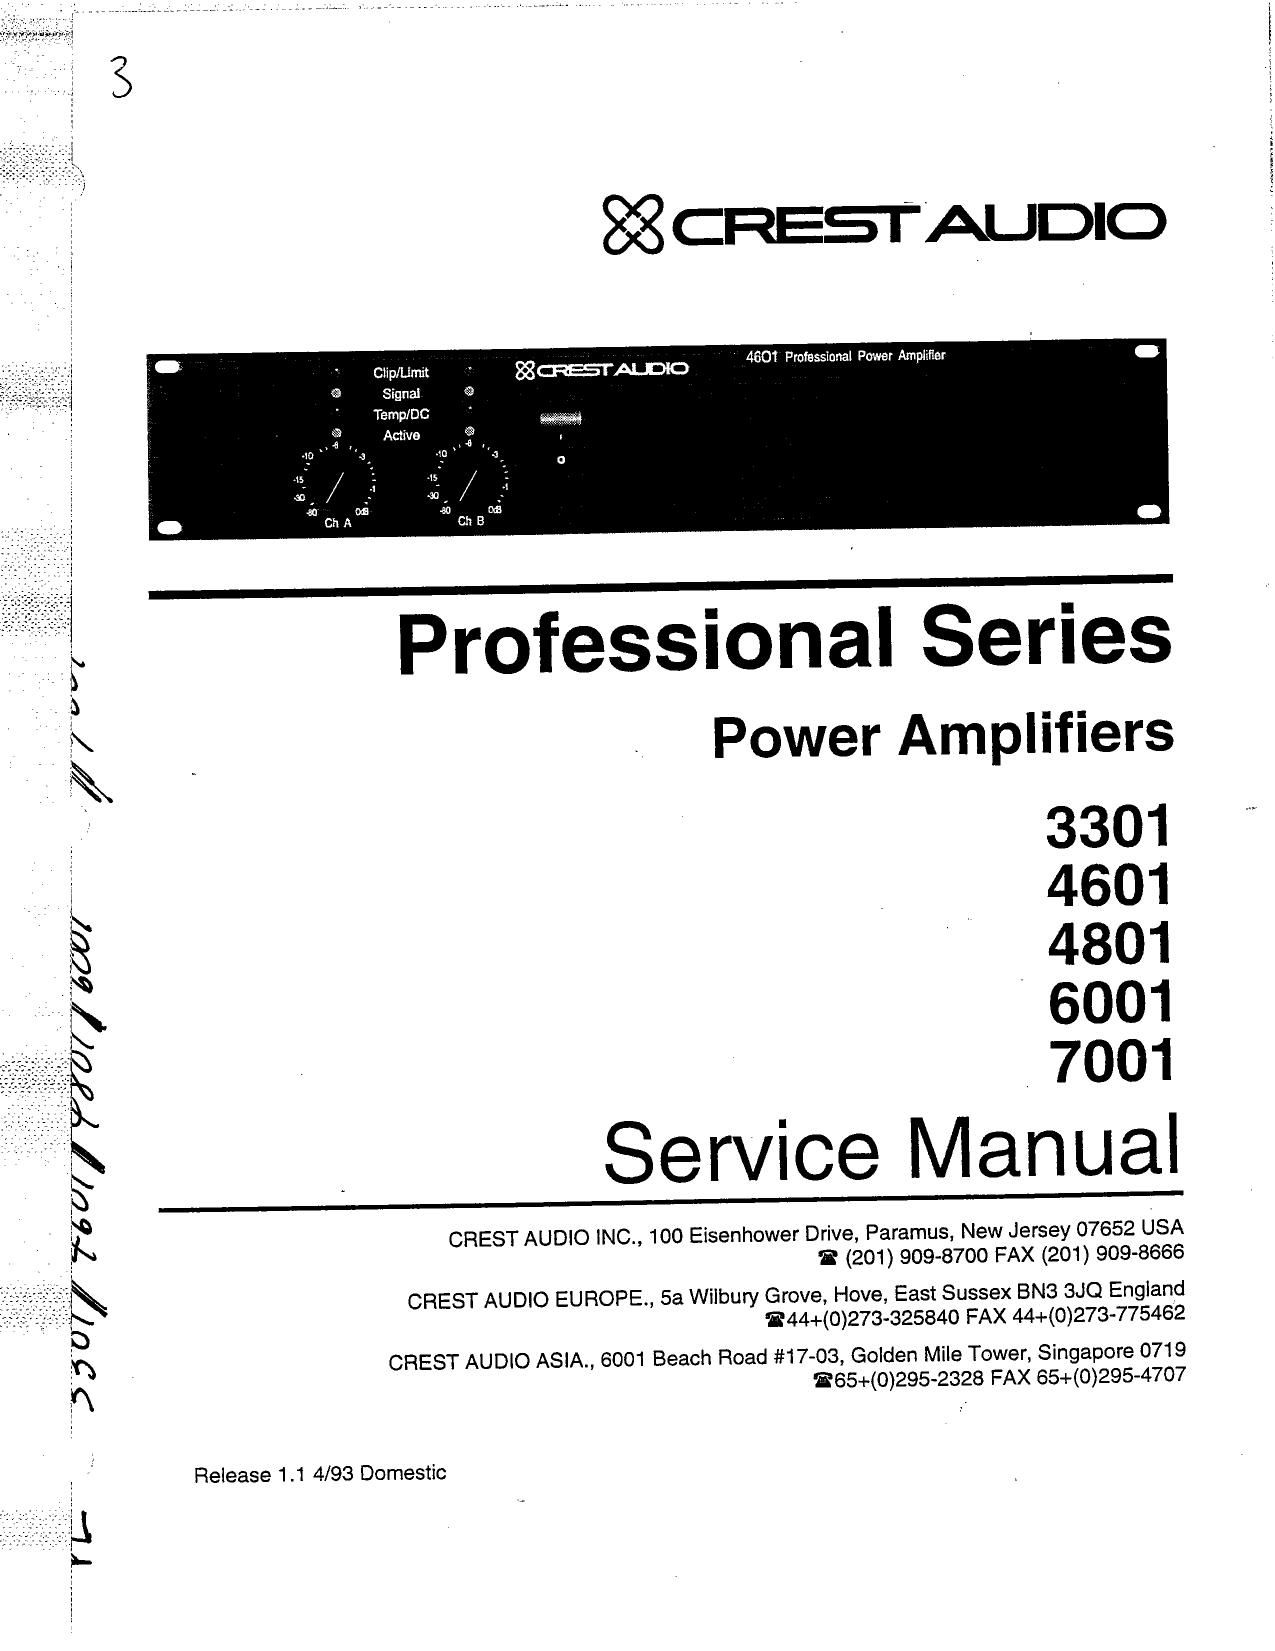 Crest Audio 7001 Service Manual